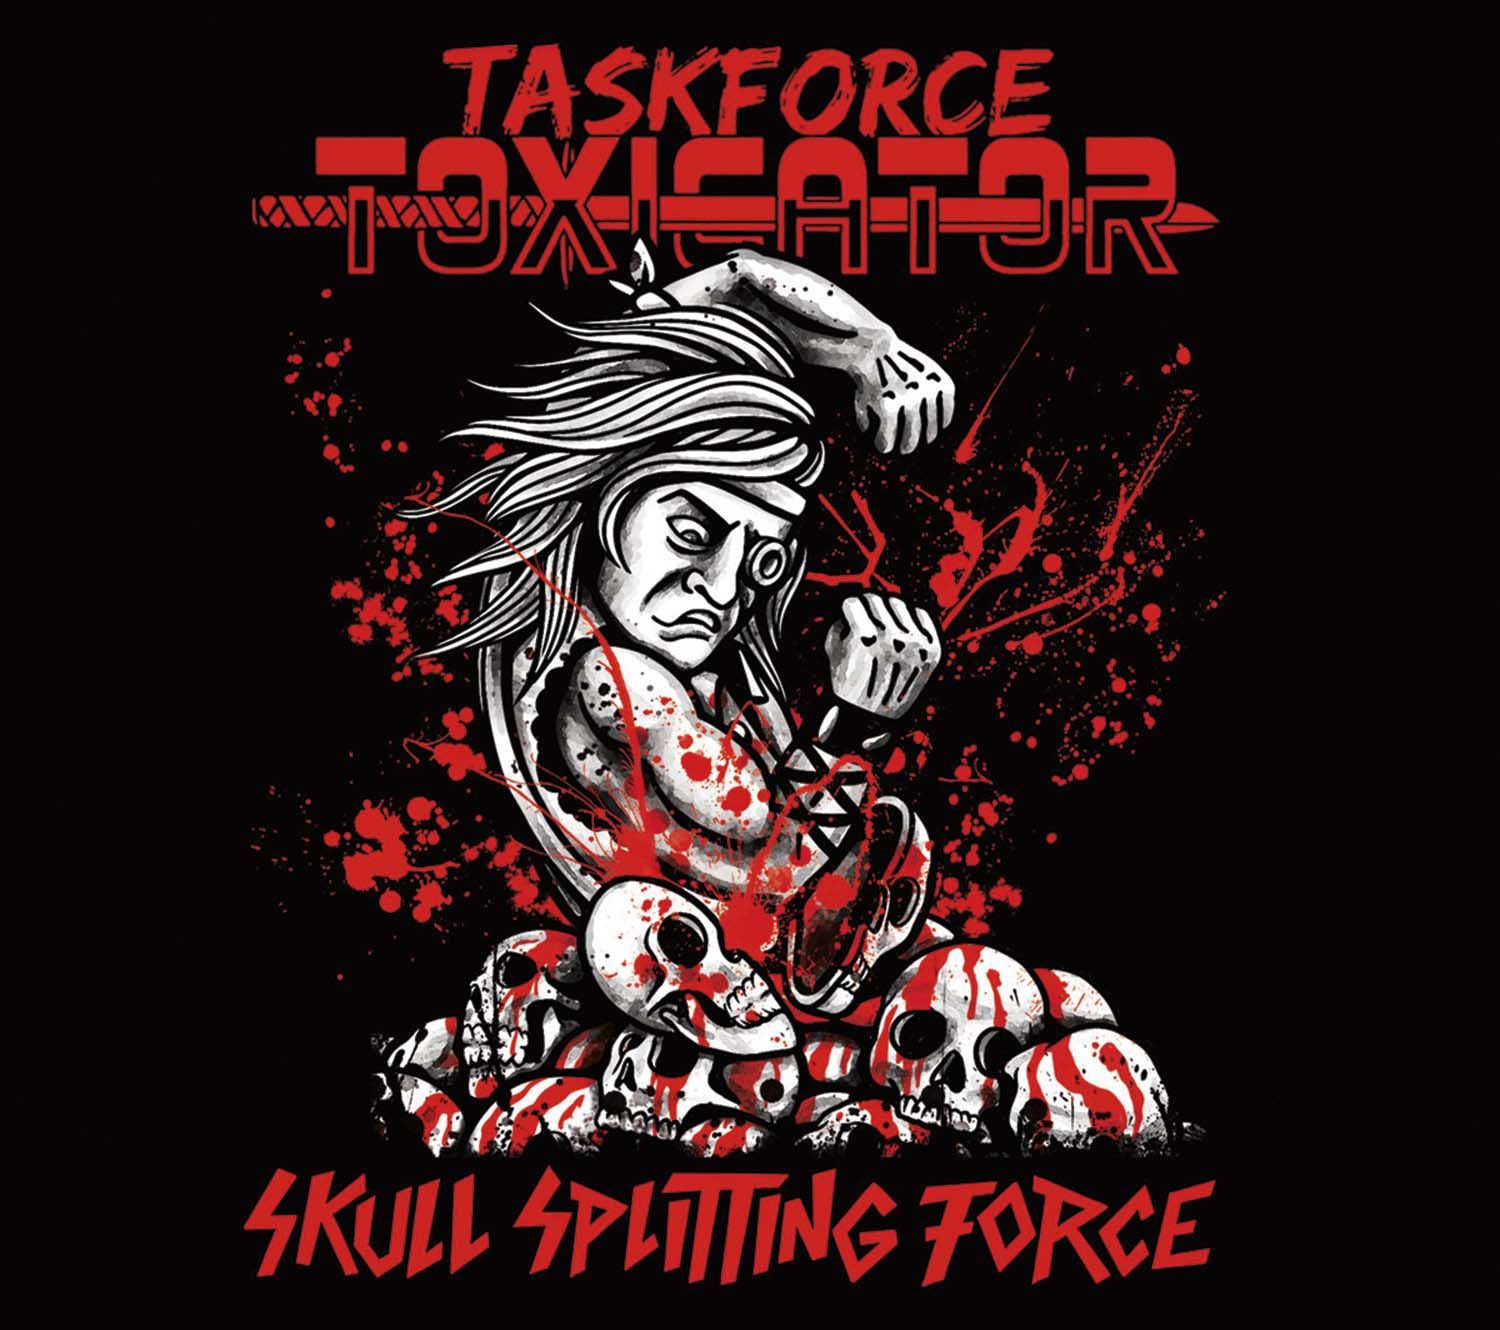 Taskforce Toxicator - Skull Splitting Force